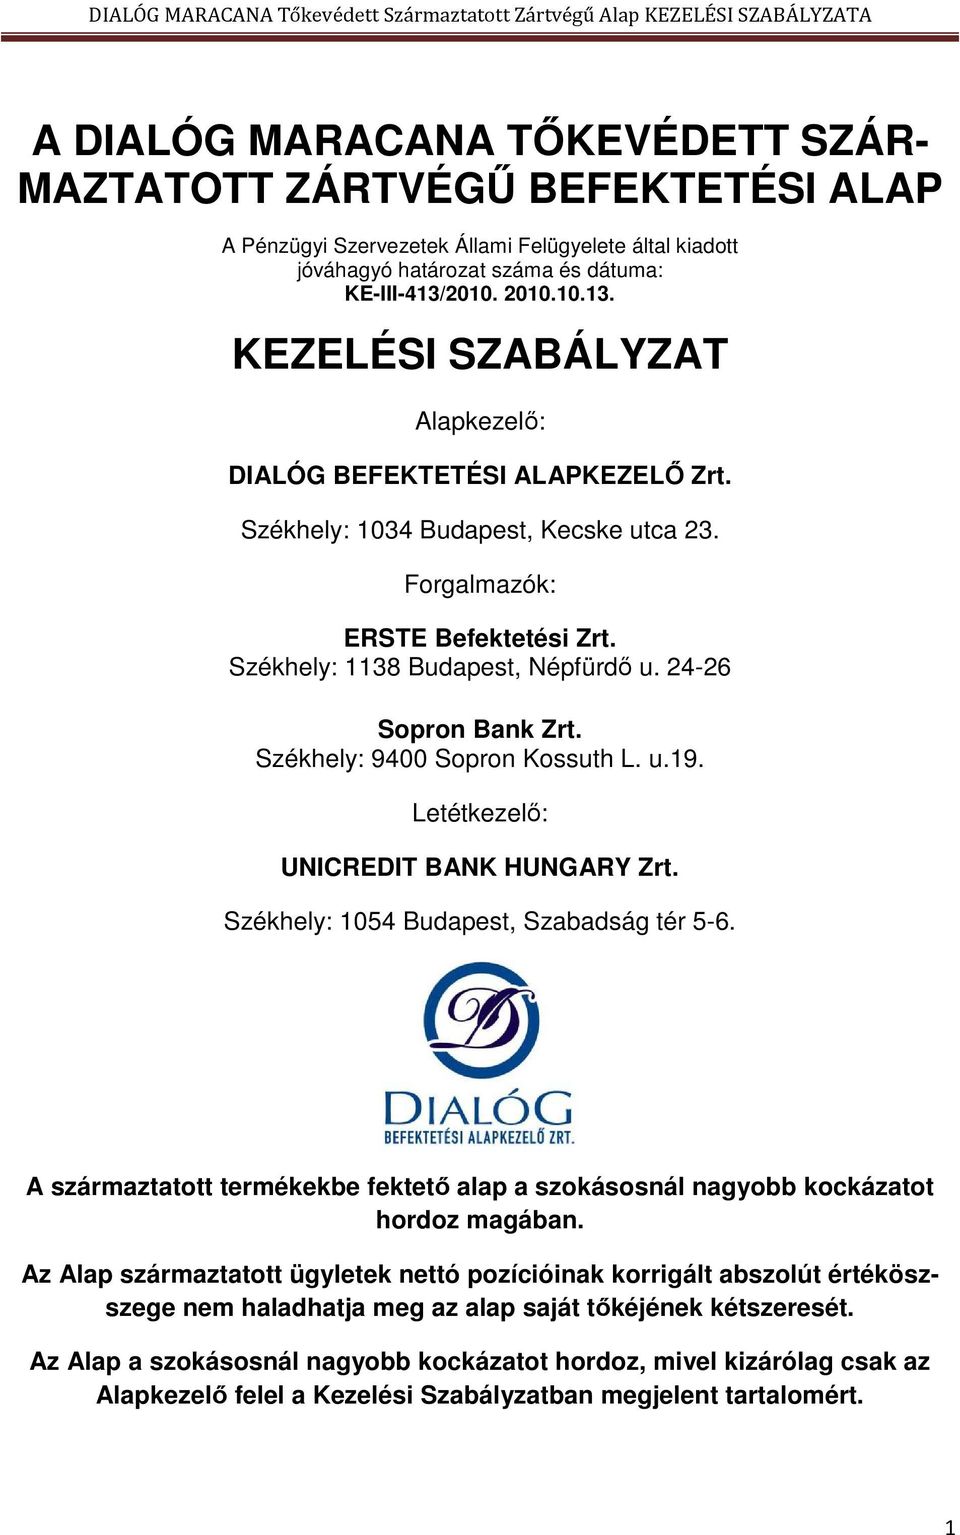 24-26 Sopron Bank Zrt. Székhely: 9400 Sopron Kossuth L. u.19. Letétkezelő: UNICREDIT BANK HUNGARY Zrt. Székhely: 1054 Budapest, Szabadság tér 5-6.